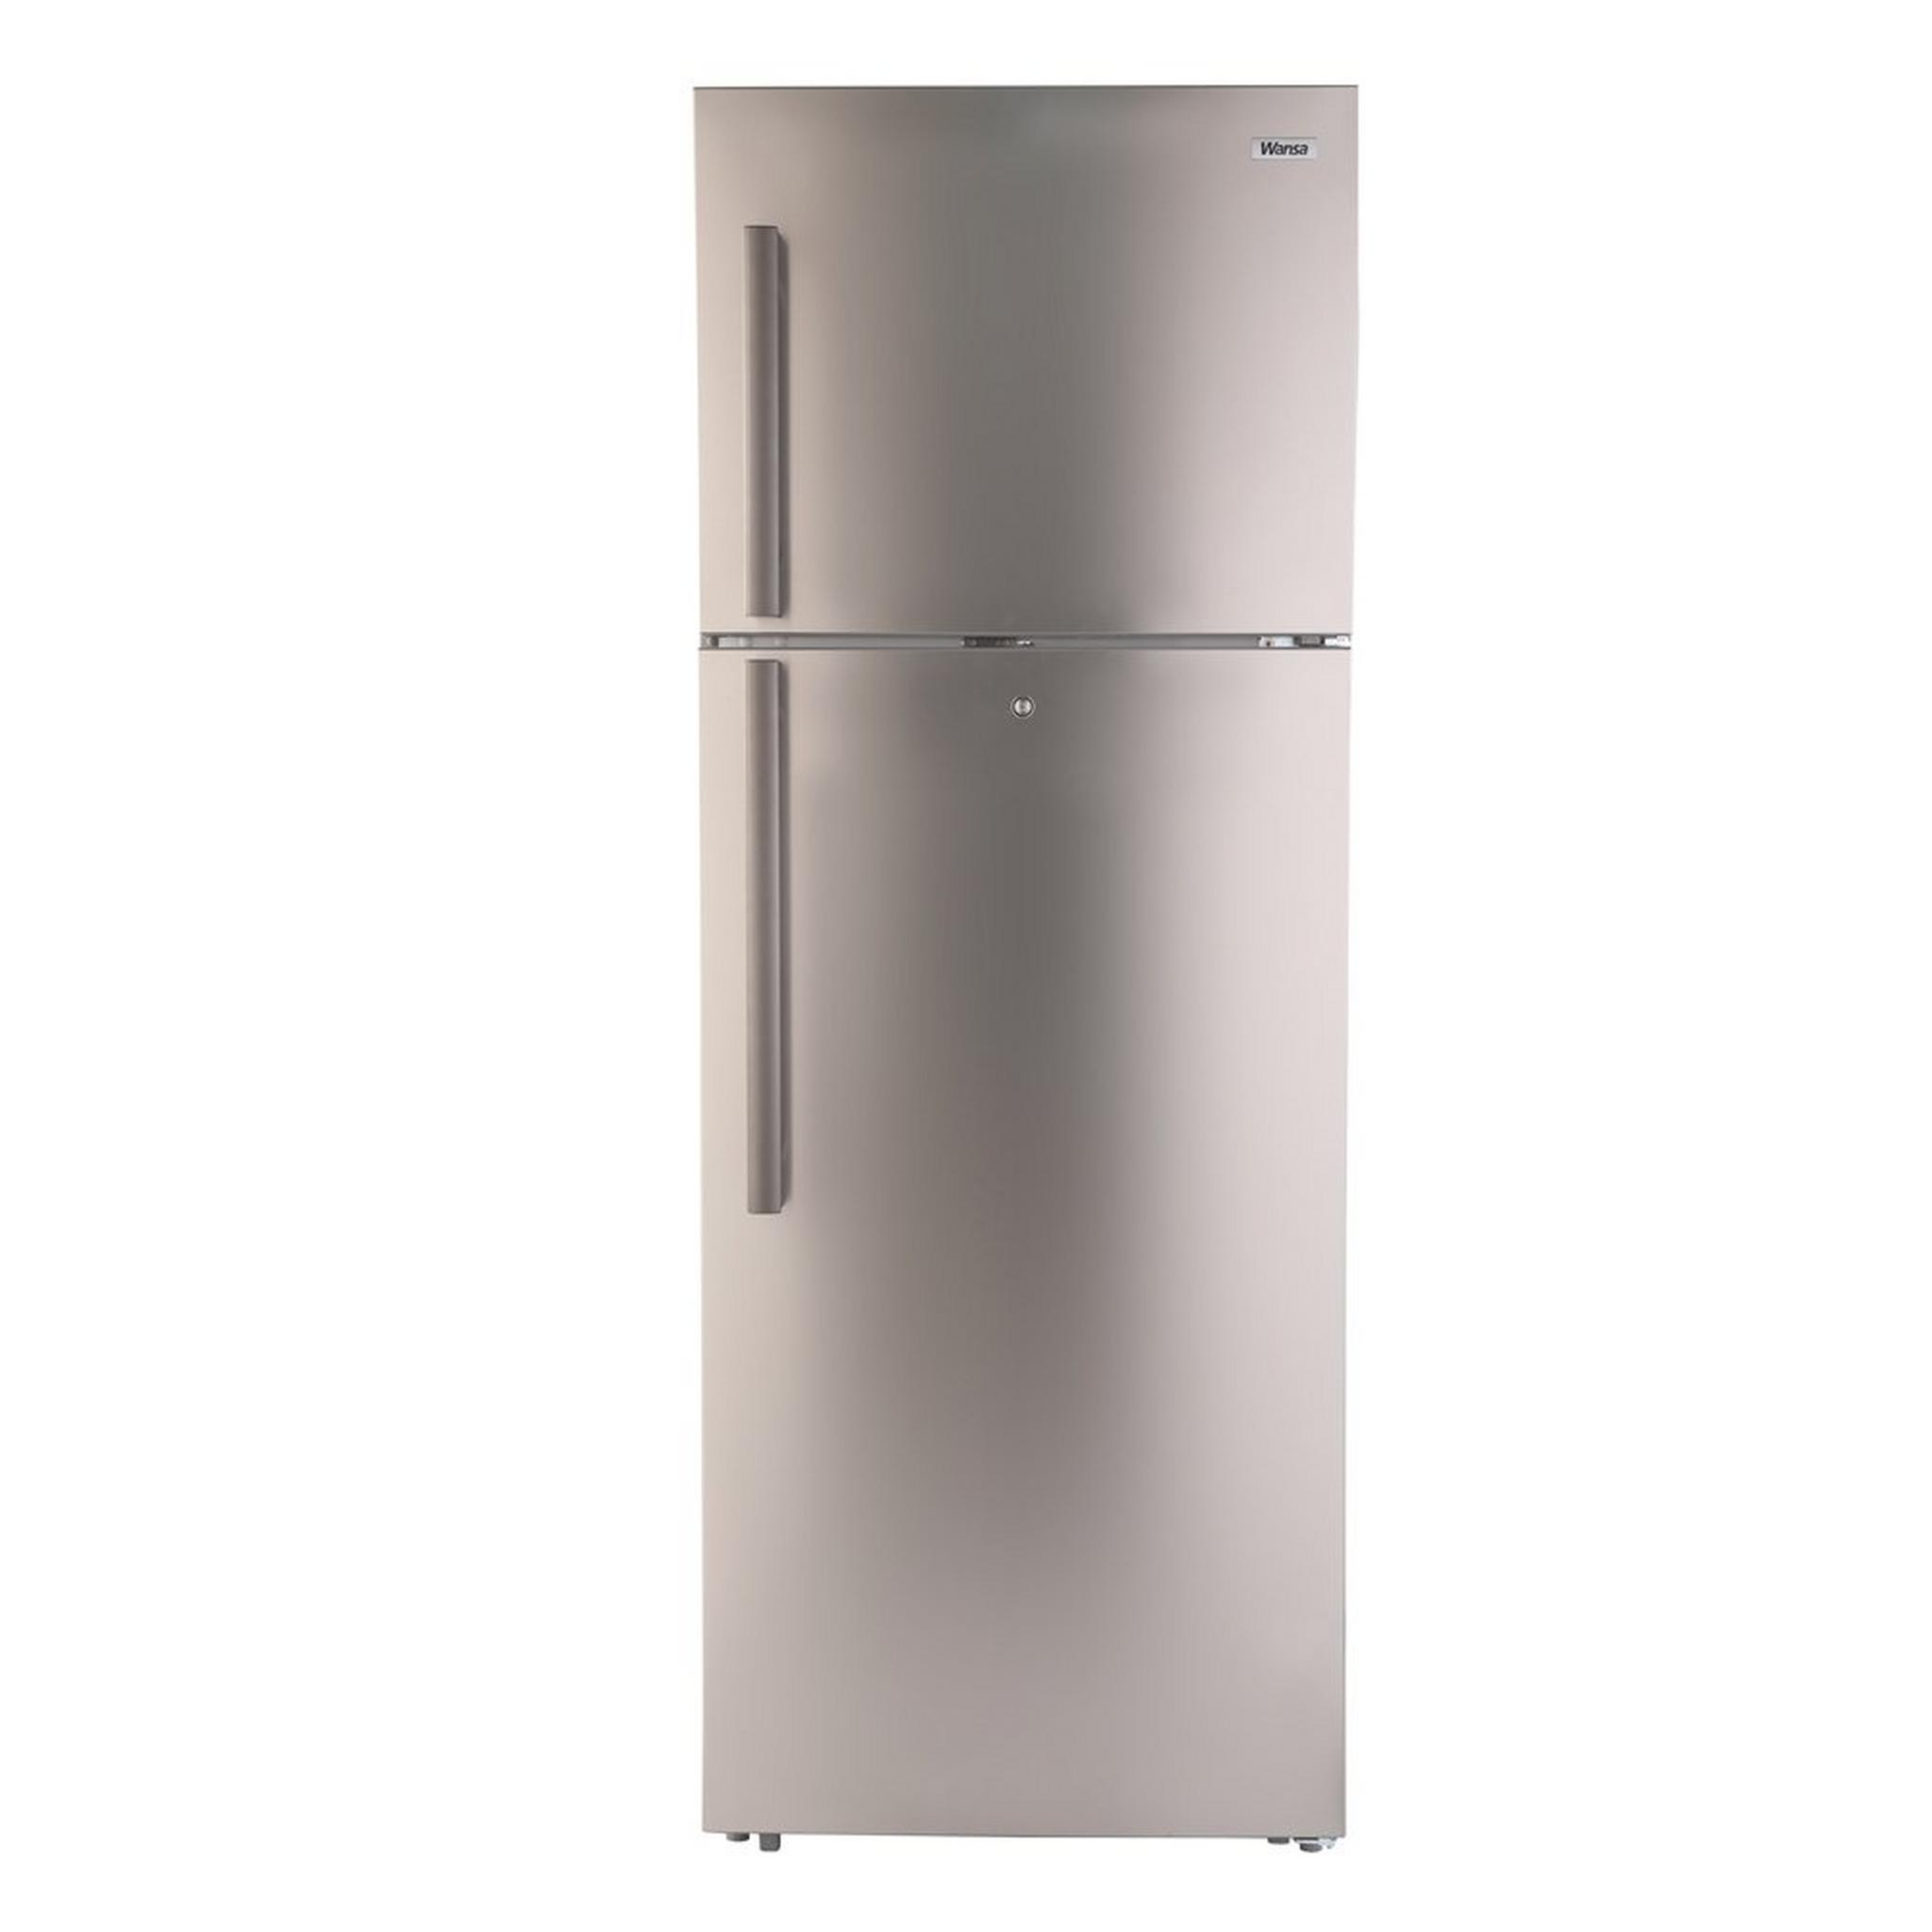 Wansa Top Mount Refrigerator, 22CFT, 624-Liters, WRT-624-NFSSC62 - Stainless Steel